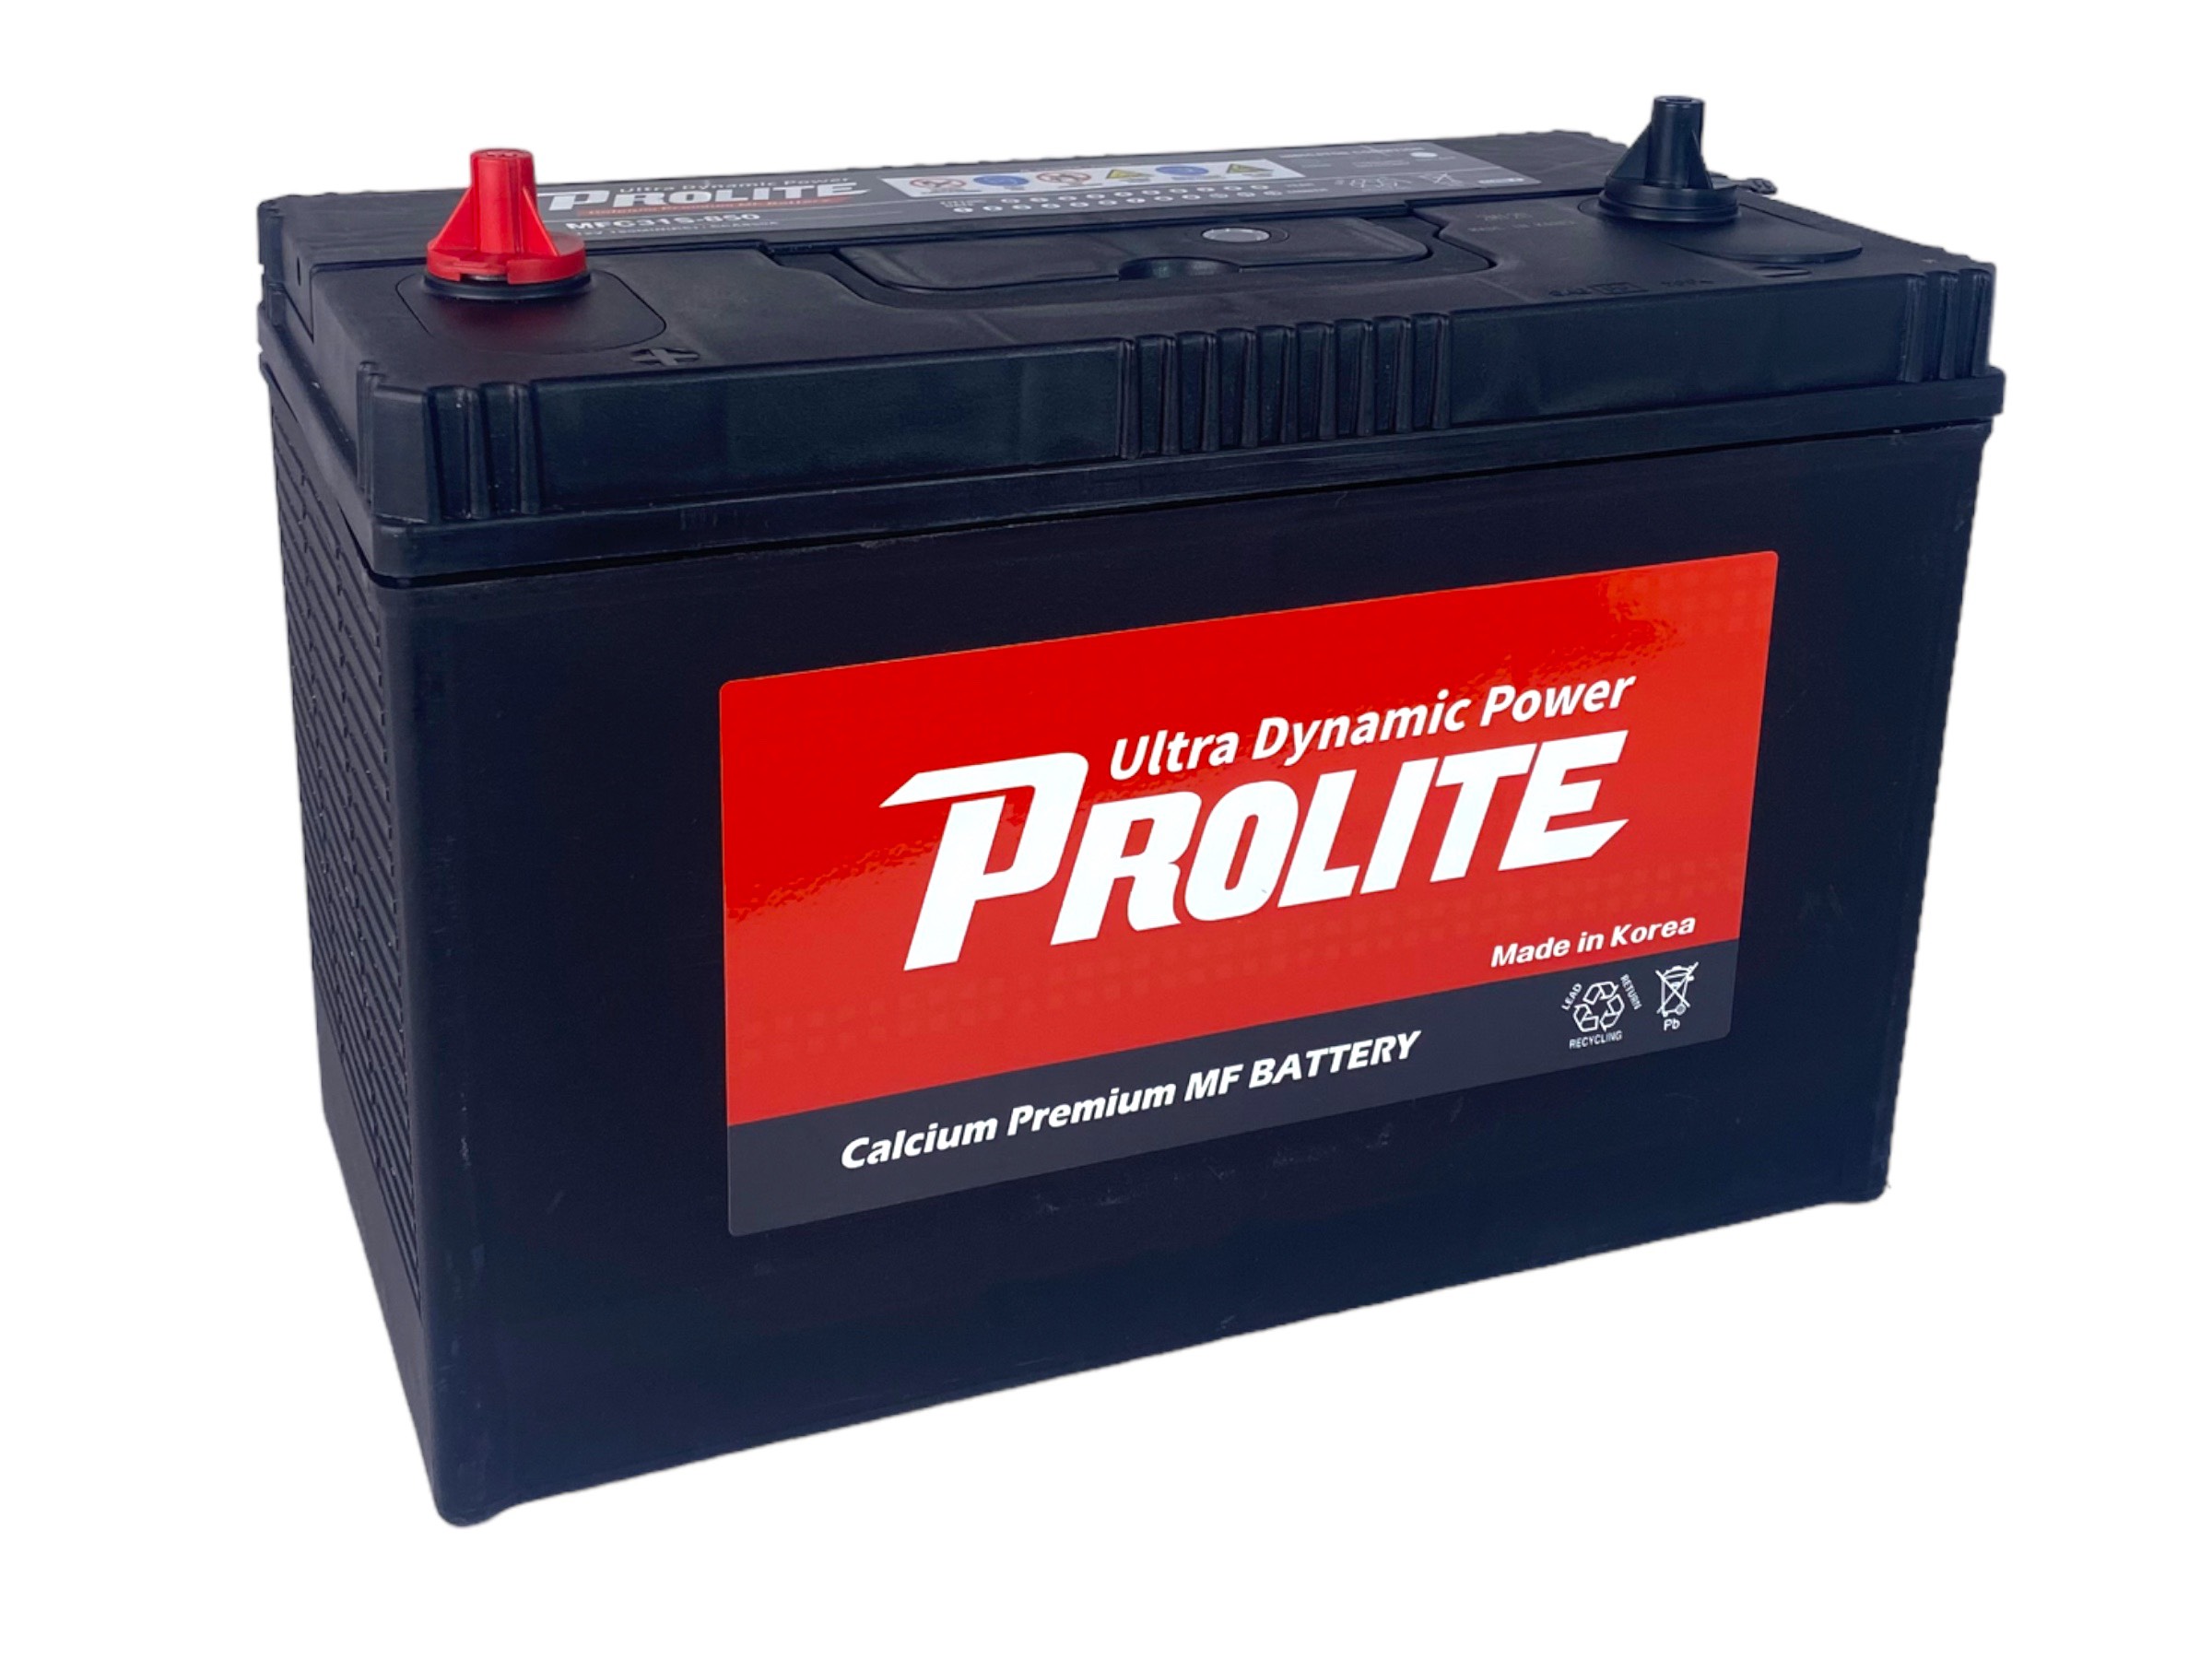 Bình ắc quy Ô tô NGOẠI NHẬP - Prolite C31-850 12V - 100AH